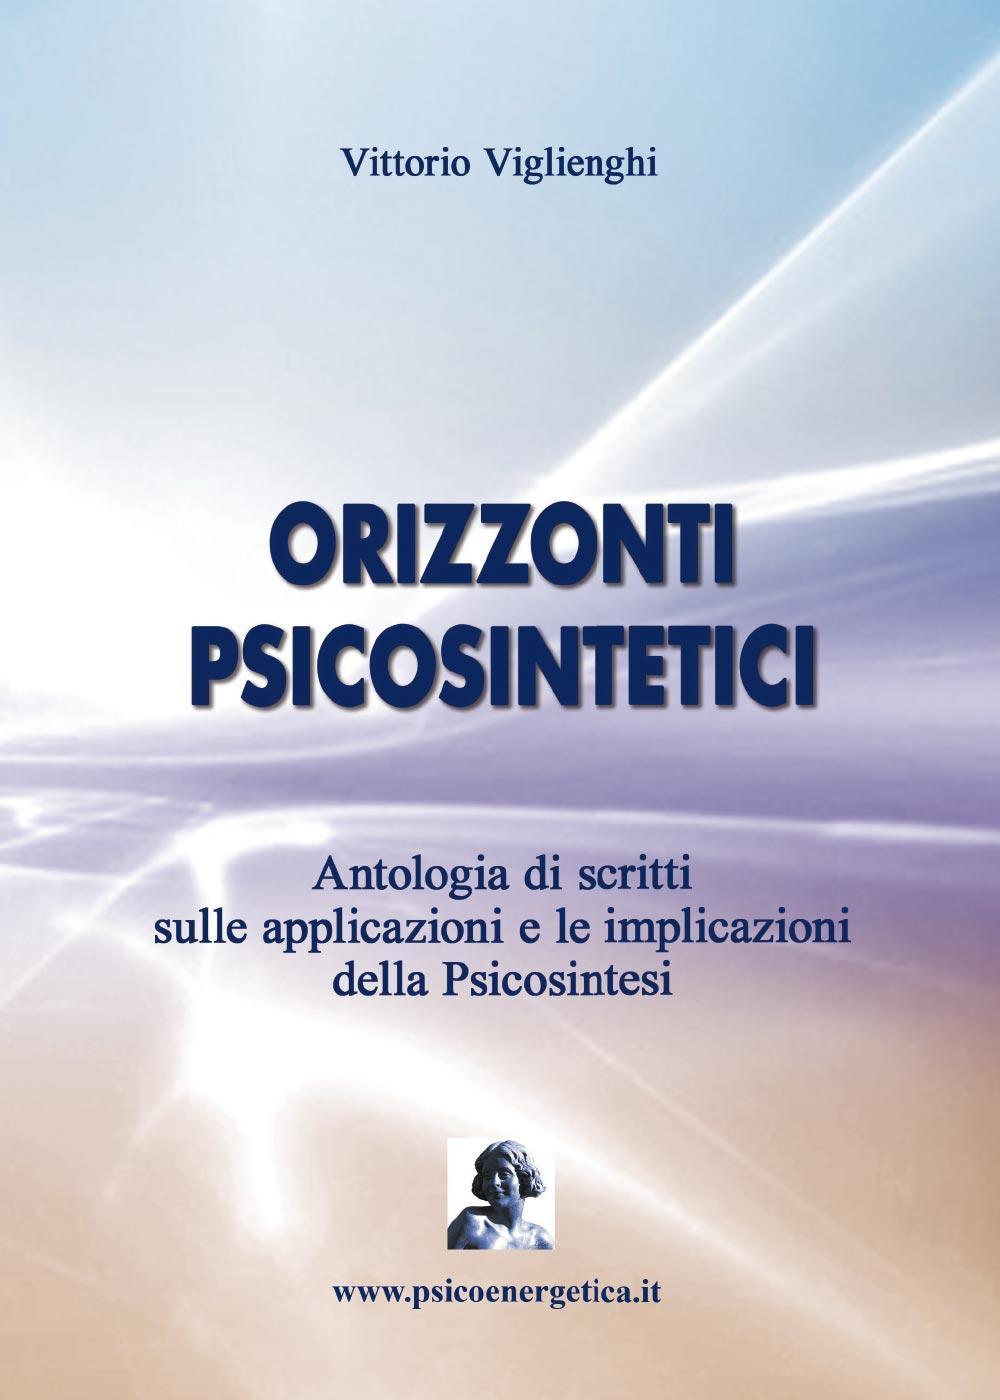 Libri Vittorio Viglienghi - Orizzonti Psicosintetici NUOVO SIGILLATO, EDIZIONE DEL 10/10/2016 SUBITO DISPONIBILE